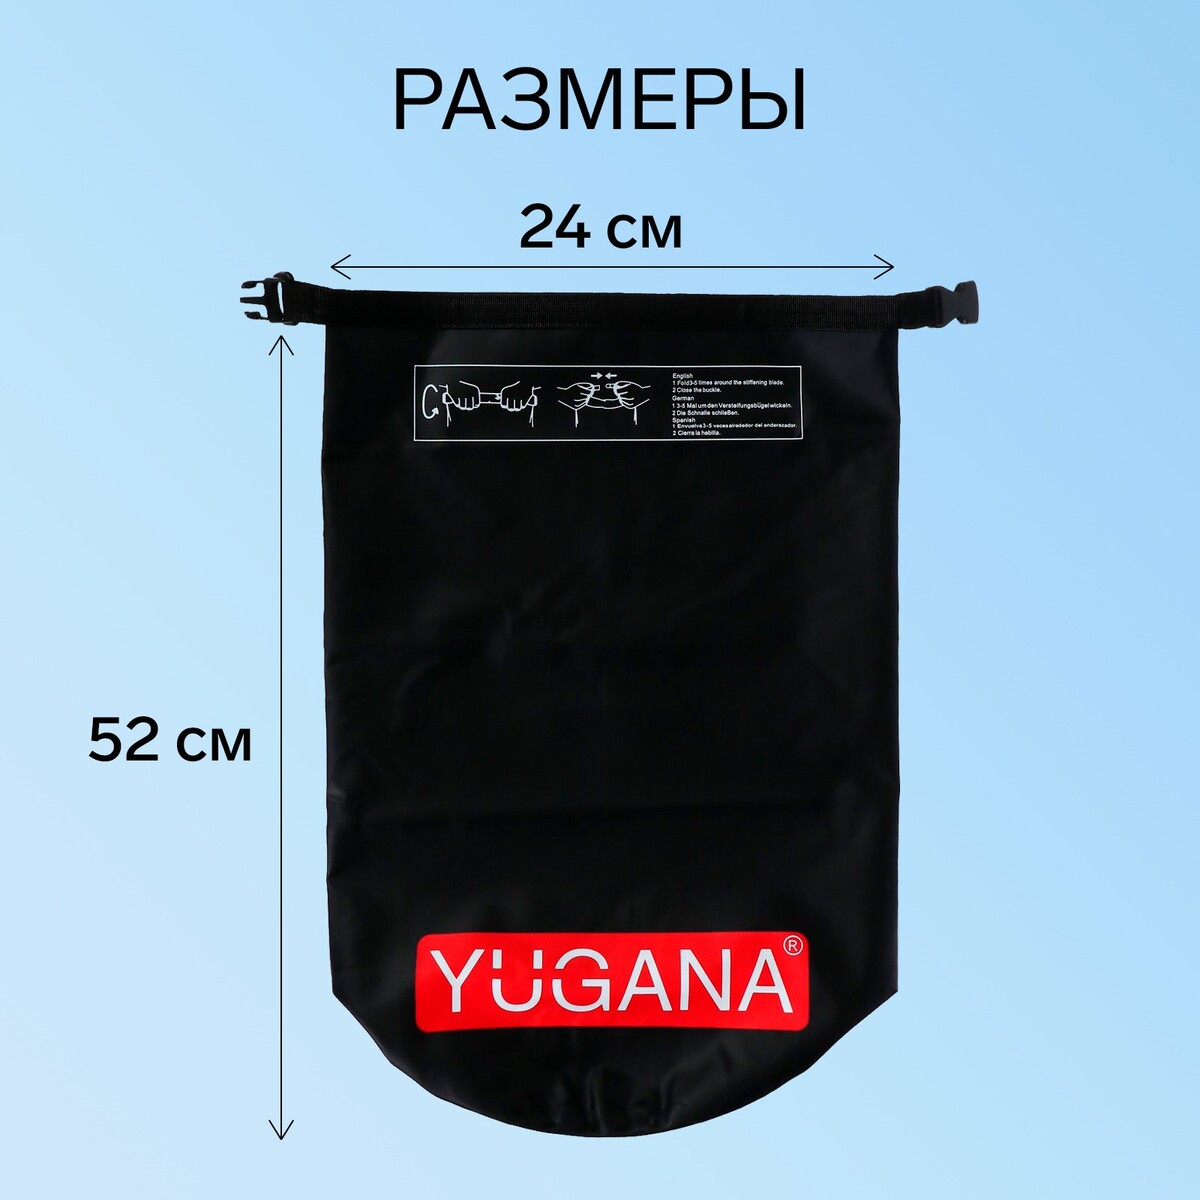 фото Гермомешок yugana, пвх, водонепроницаемый 15 литров, один ремень, черный